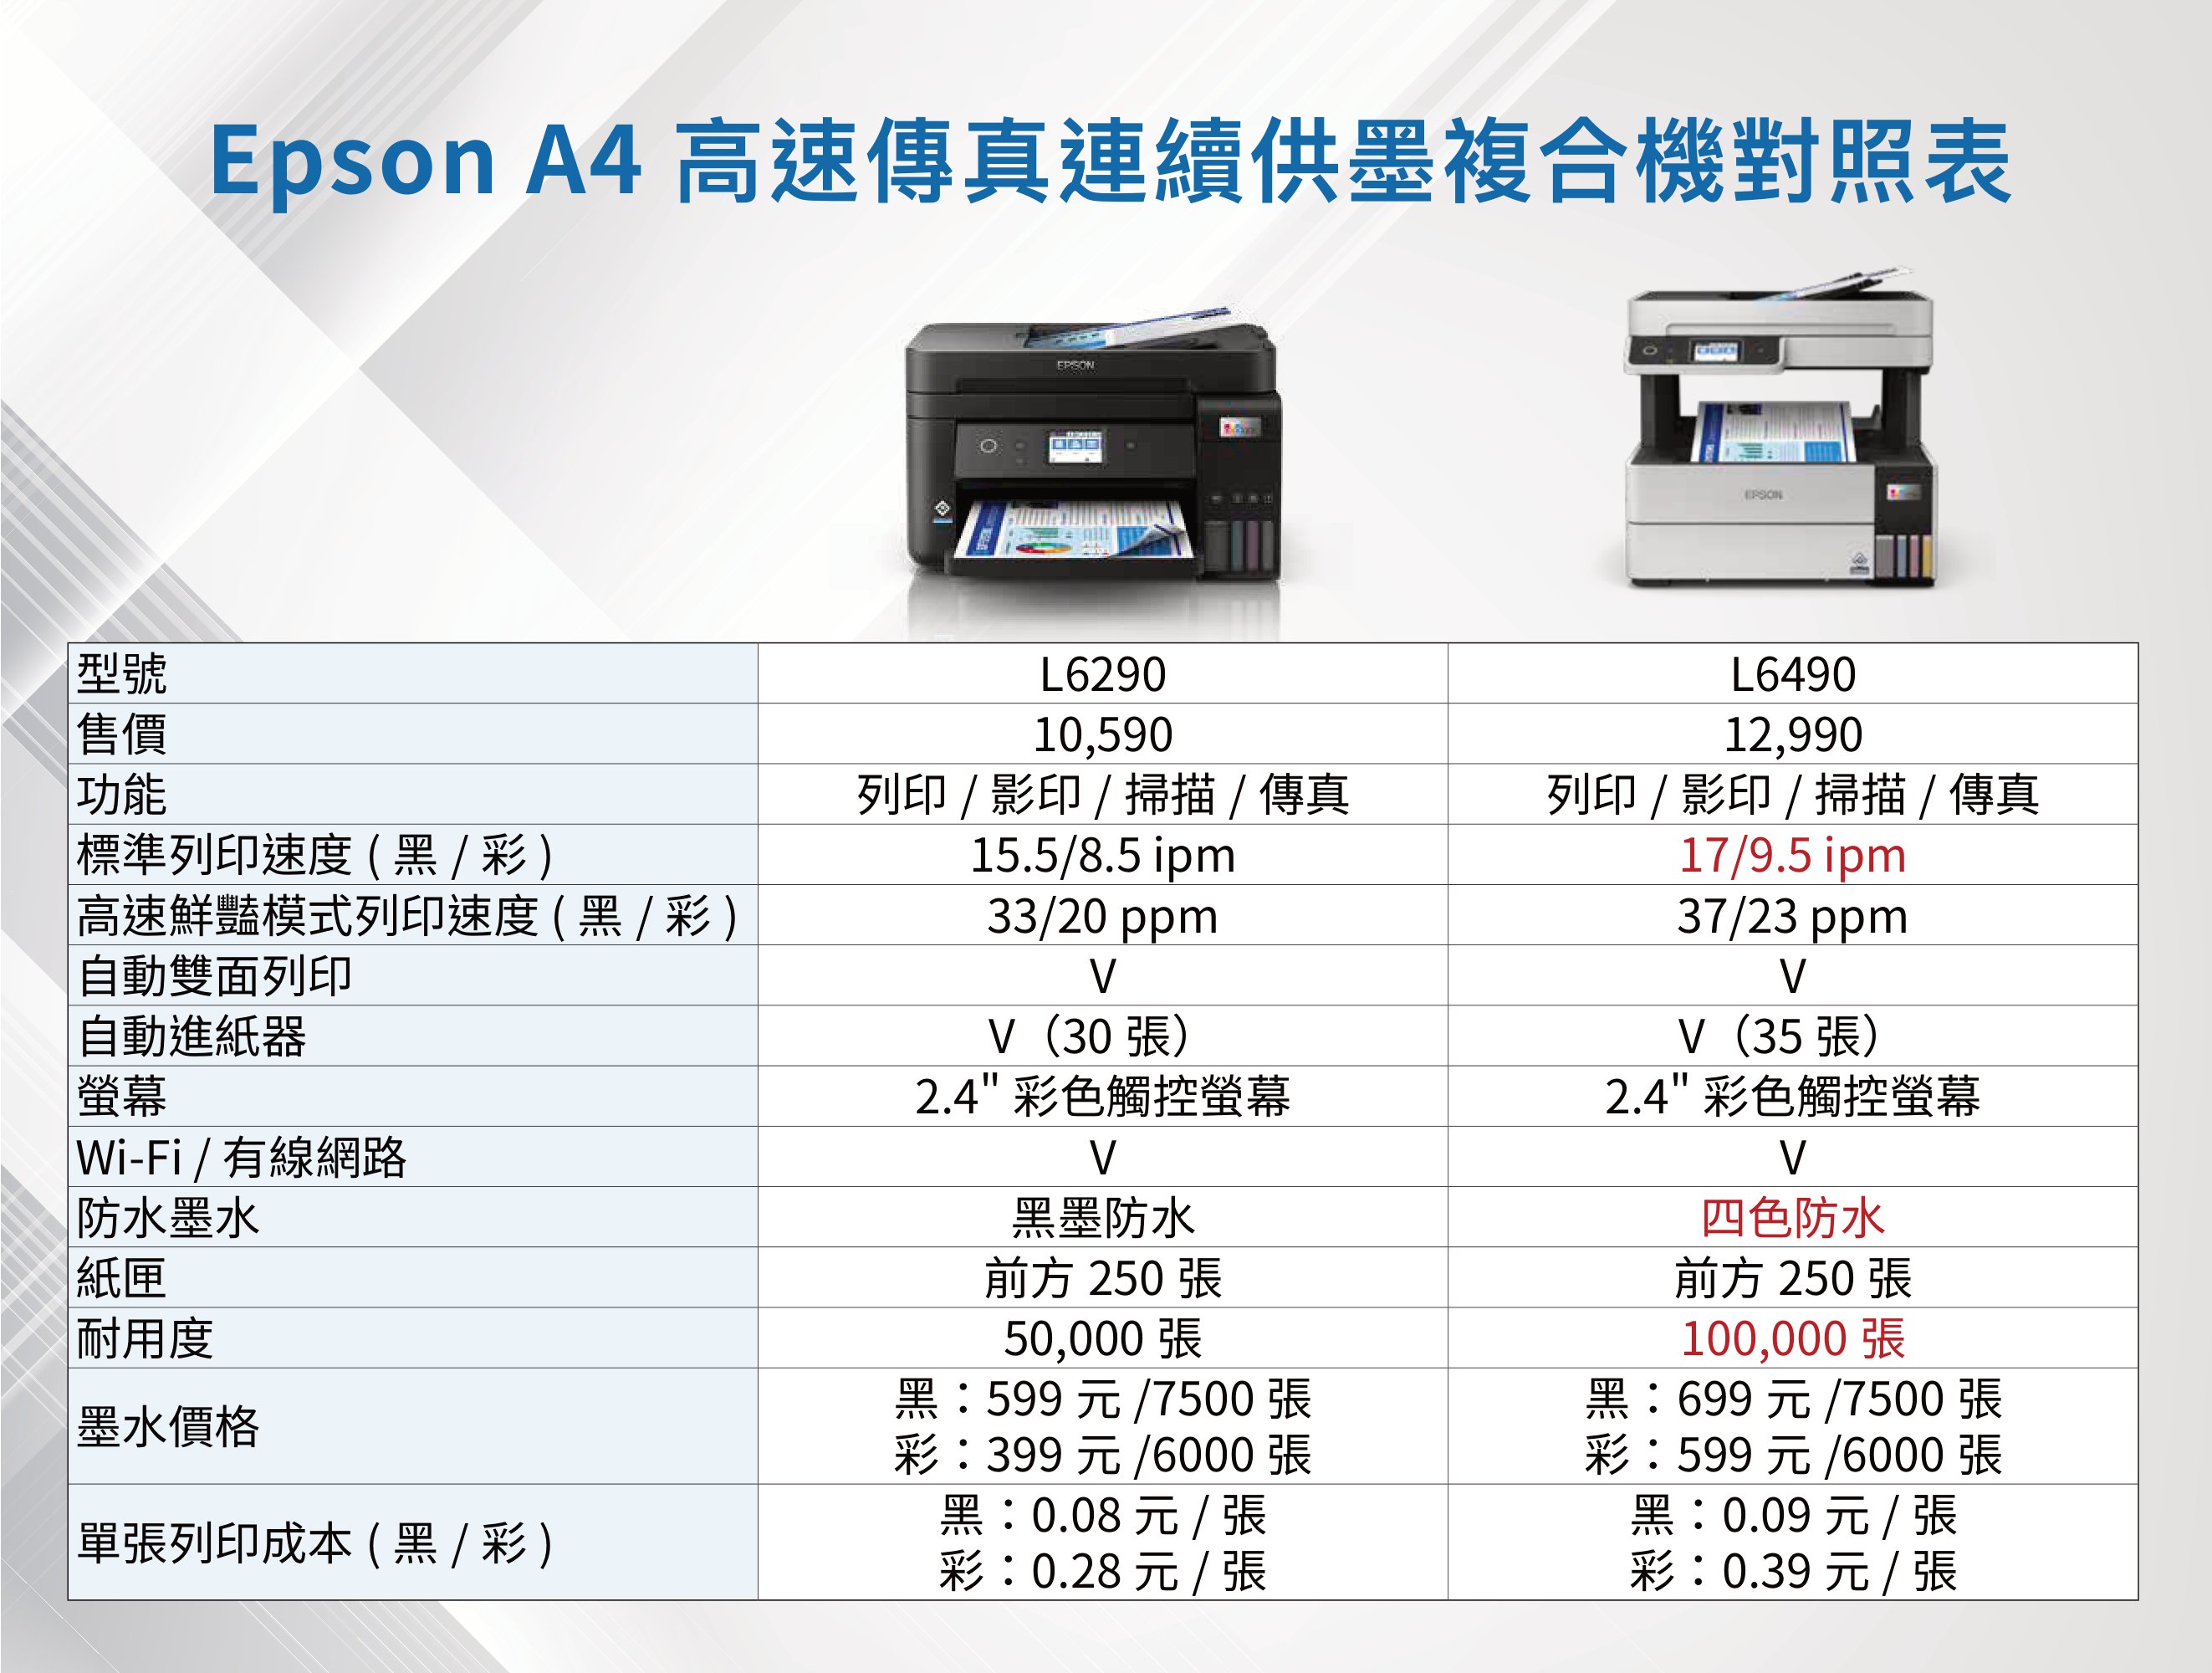 Epson A4 高速傳真連續供墨複合機對照表型號售價功能標準列印速度(黑/彩)高速鮮豔模式列印速度(黑/彩)自動雙面列印自動進紙器螢幕Wi-Fi/有線網路防水墨水紙匣耐用度L6290L649010,59012,990列印 / 影印 / 掃描/傳真15.5/8.5 ipm列印 / 影印 / 掃描/傳真17/9.5 ipm33/20 ppm37/23 ppm(30張)(35張)2.4 彩色觸控螢幕V黑墨防水前方 250 張50,000 張墨水價格單張列印成本(黑/彩)黑:599元/7500 張彩:399元/6000張黑:0.08元/張彩:0.28元/張2.4 彩色觸控螢幕V四色防水前方 250 張100,000 張黑:699元/7500 張彩:599元/6000 張黑:0.09元 / 張彩:0.39元/張